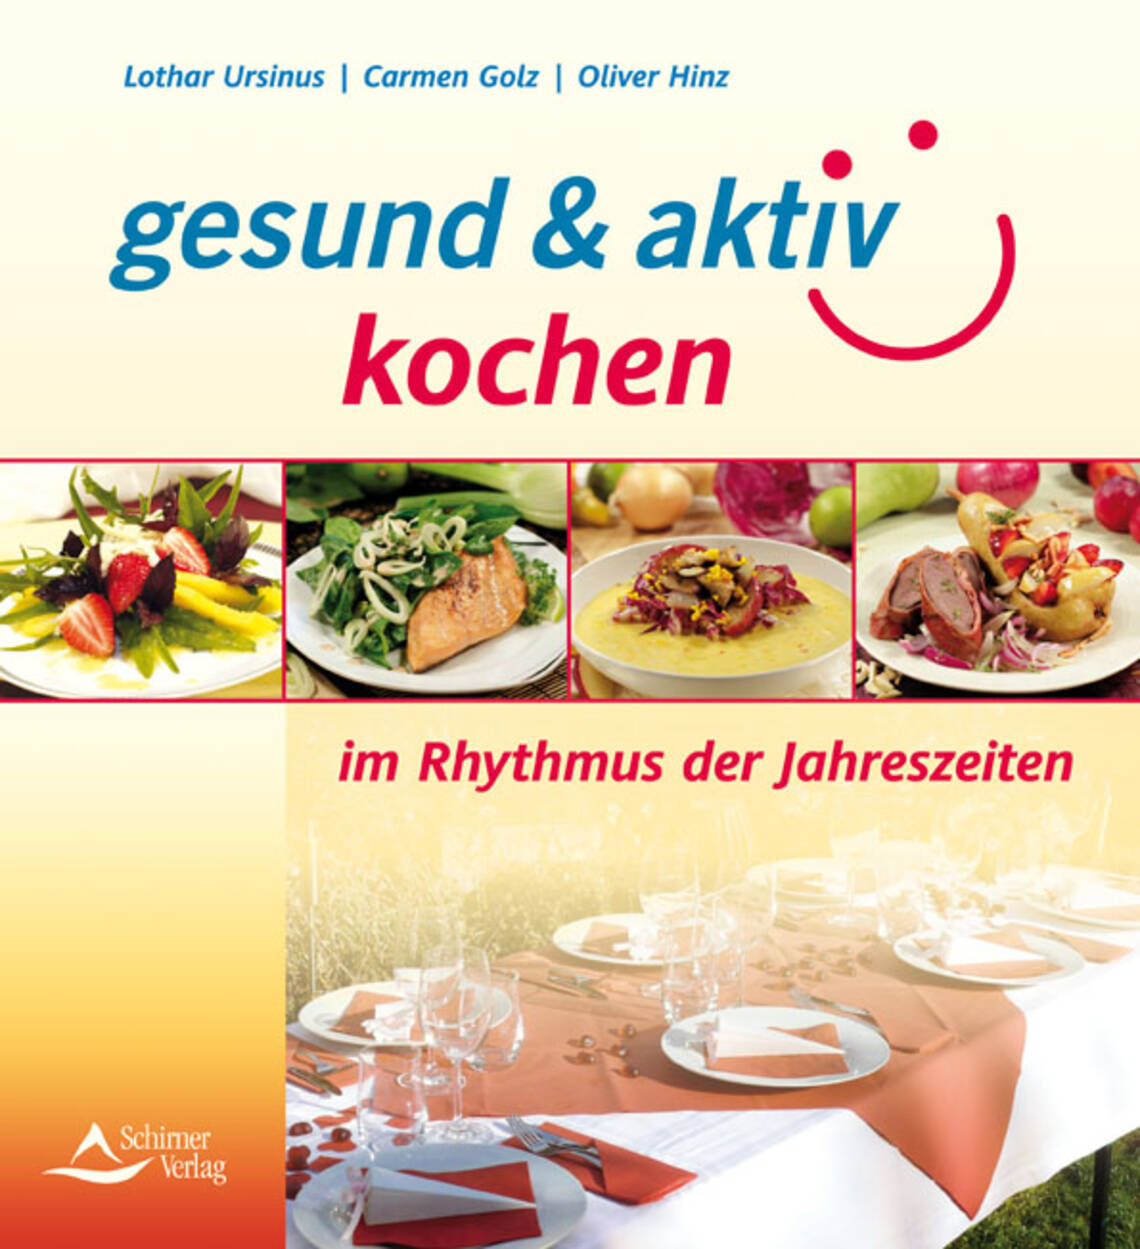 gesund & aktiv kochen im Rhythmus der Jahreszeiten von Lothar Ursinus